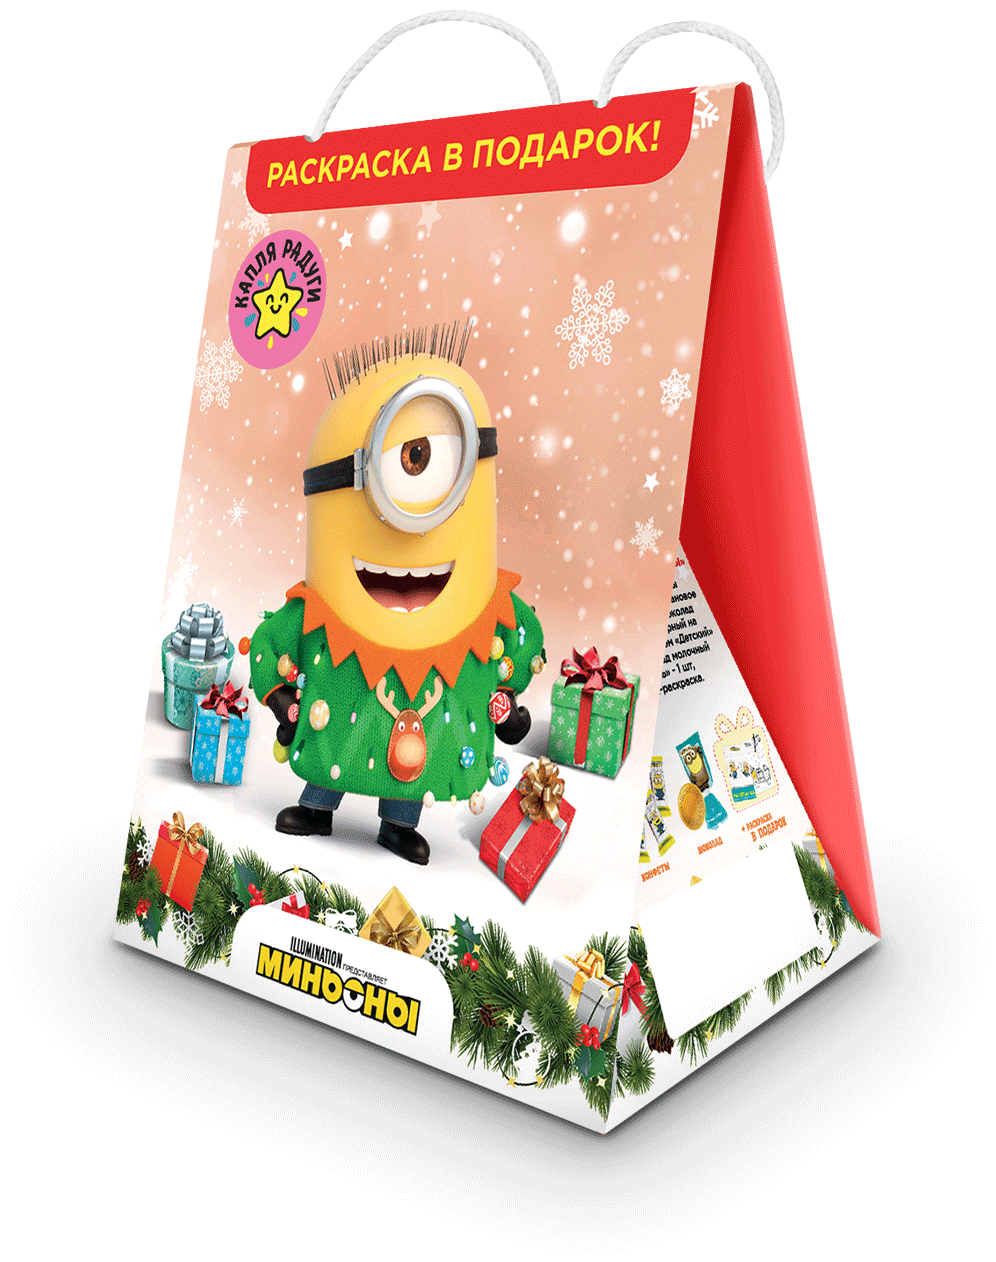 Детский подарочный набор конфет и шоколада "Миньоны ", сладкий новогодний подарок с сюрпризом раскраской, 125 г - фотография № 3